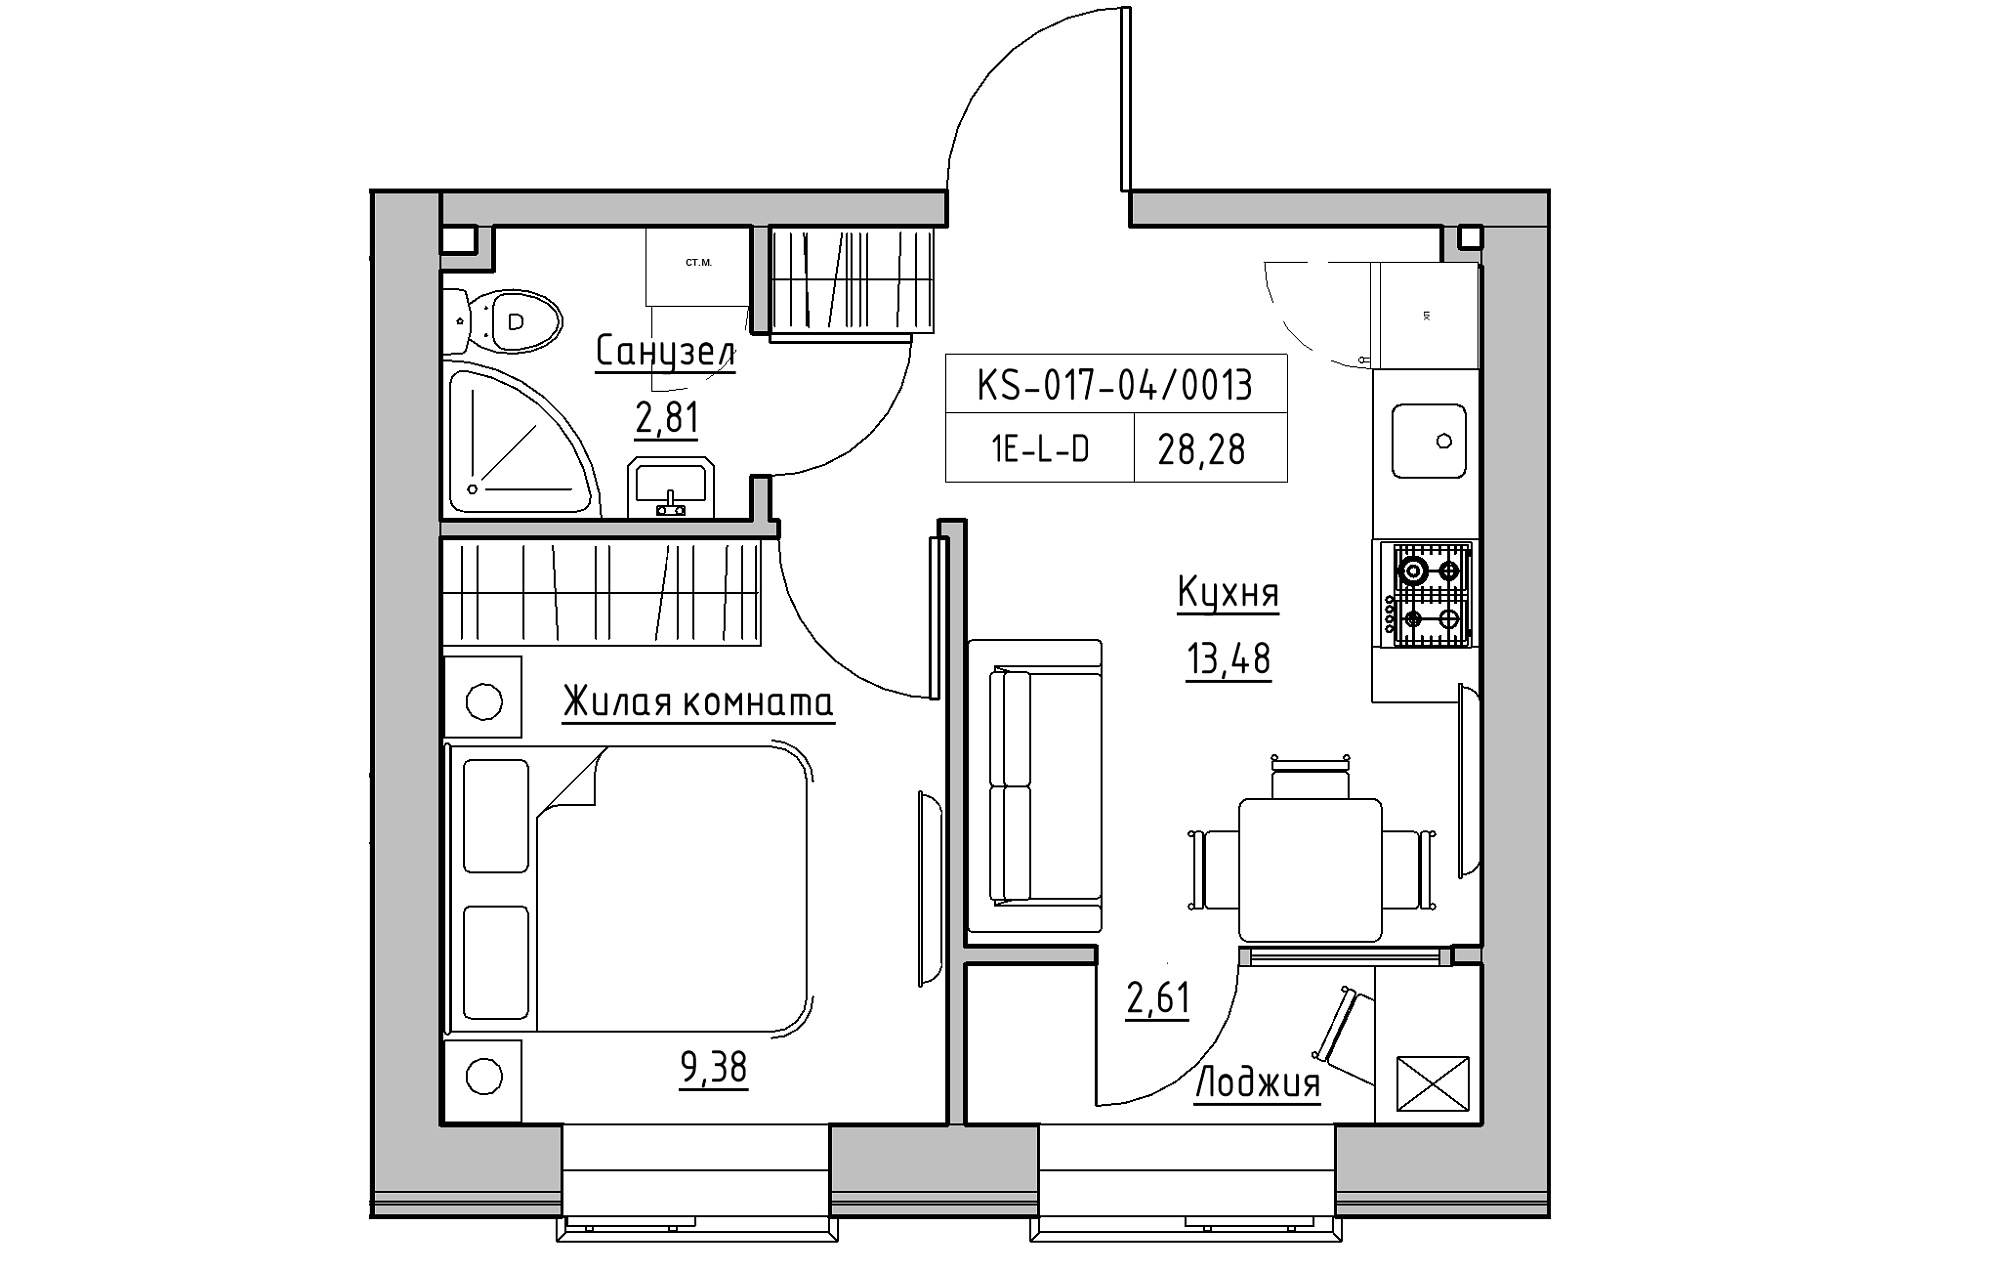 Планировка 1-к квартира площей 28.28м2, KS-017-04/0013.